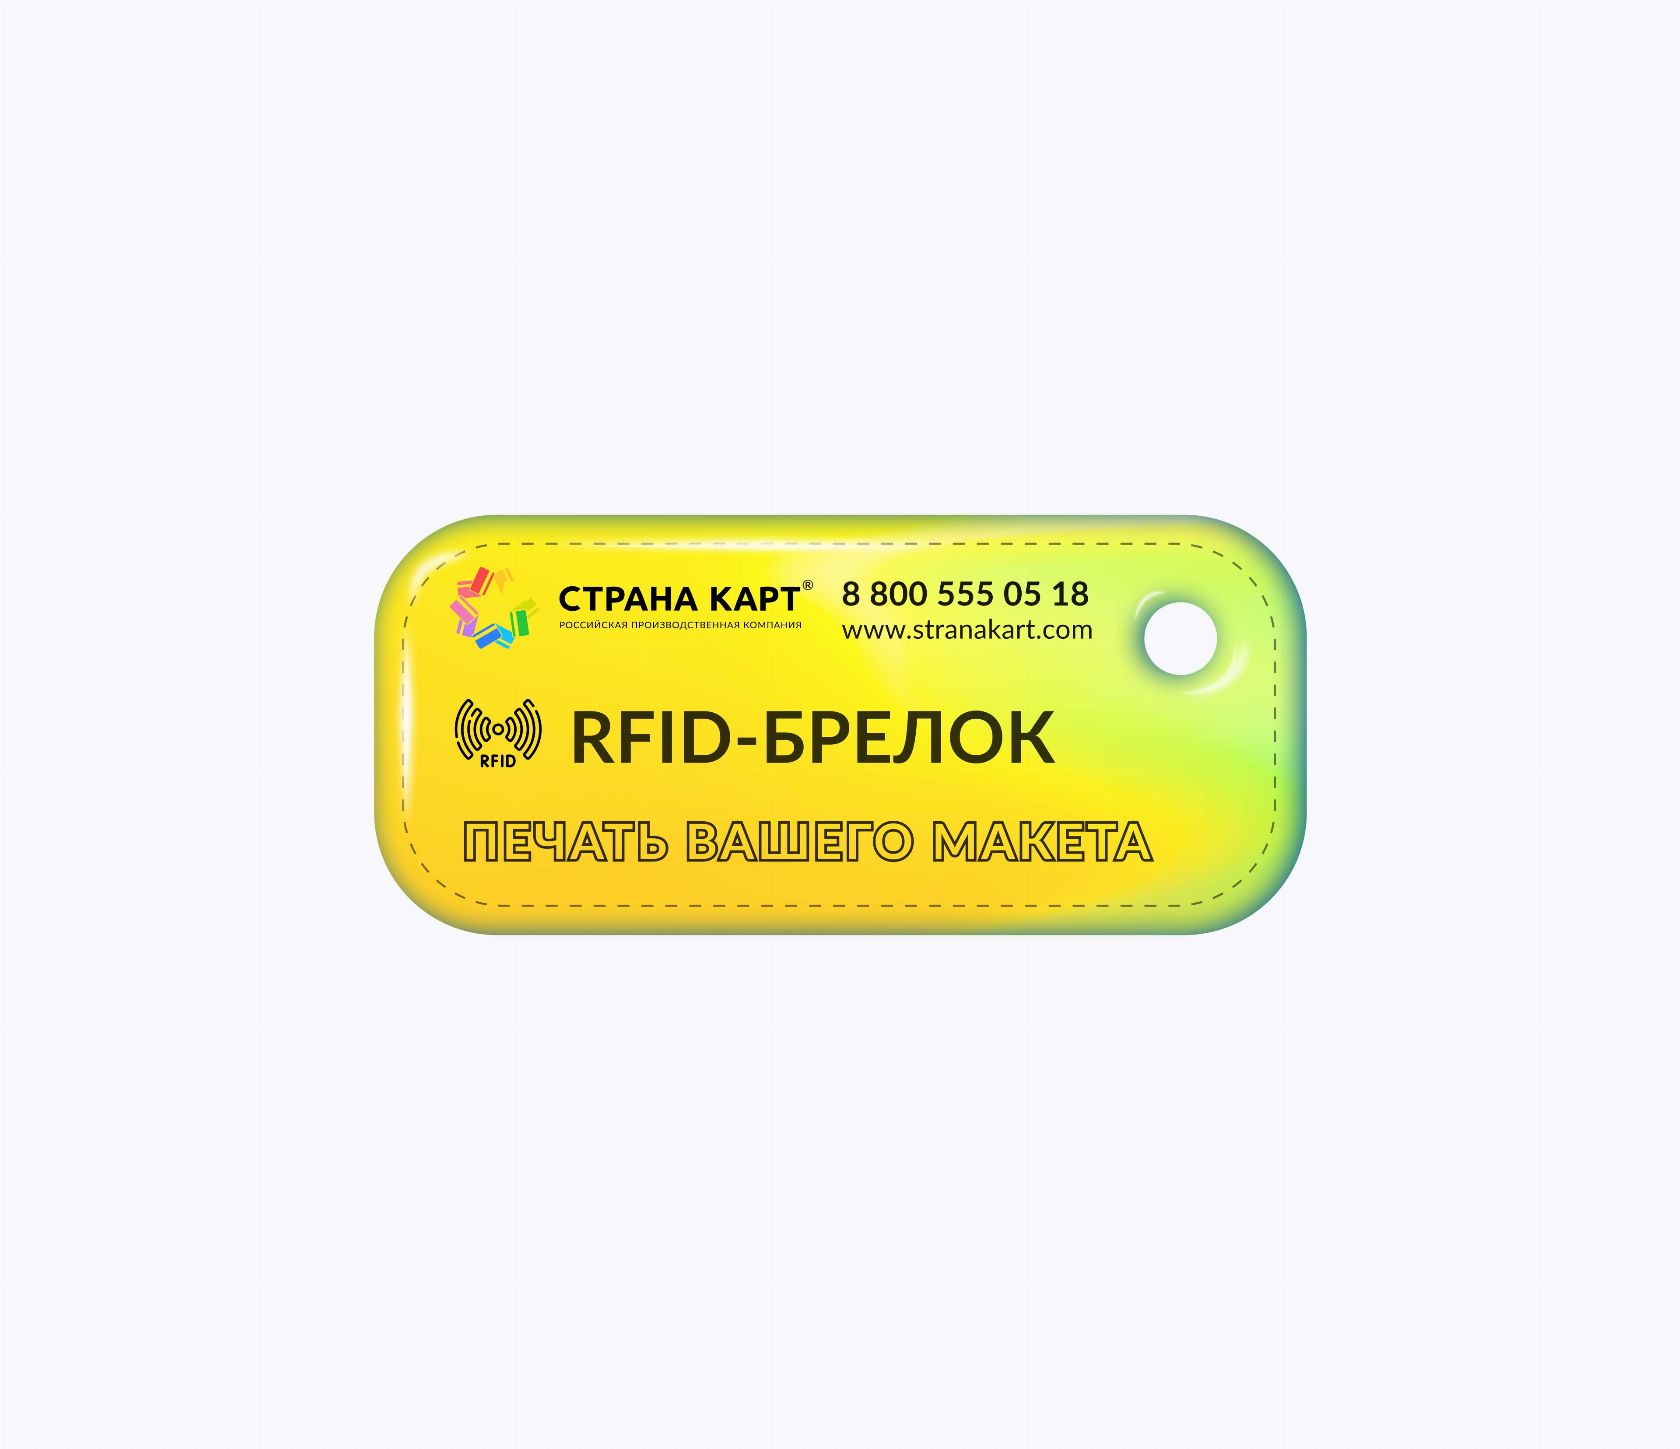 Прямоугольные мини RFID-брелоки SMARTTAG® с чипом NXP MIFARE Classic 1k 4 byte nUID RFID-брелоки NEOKEY® с чипом NXP MIFARE Classic 1k 4 byte nUID и вашим логотипом